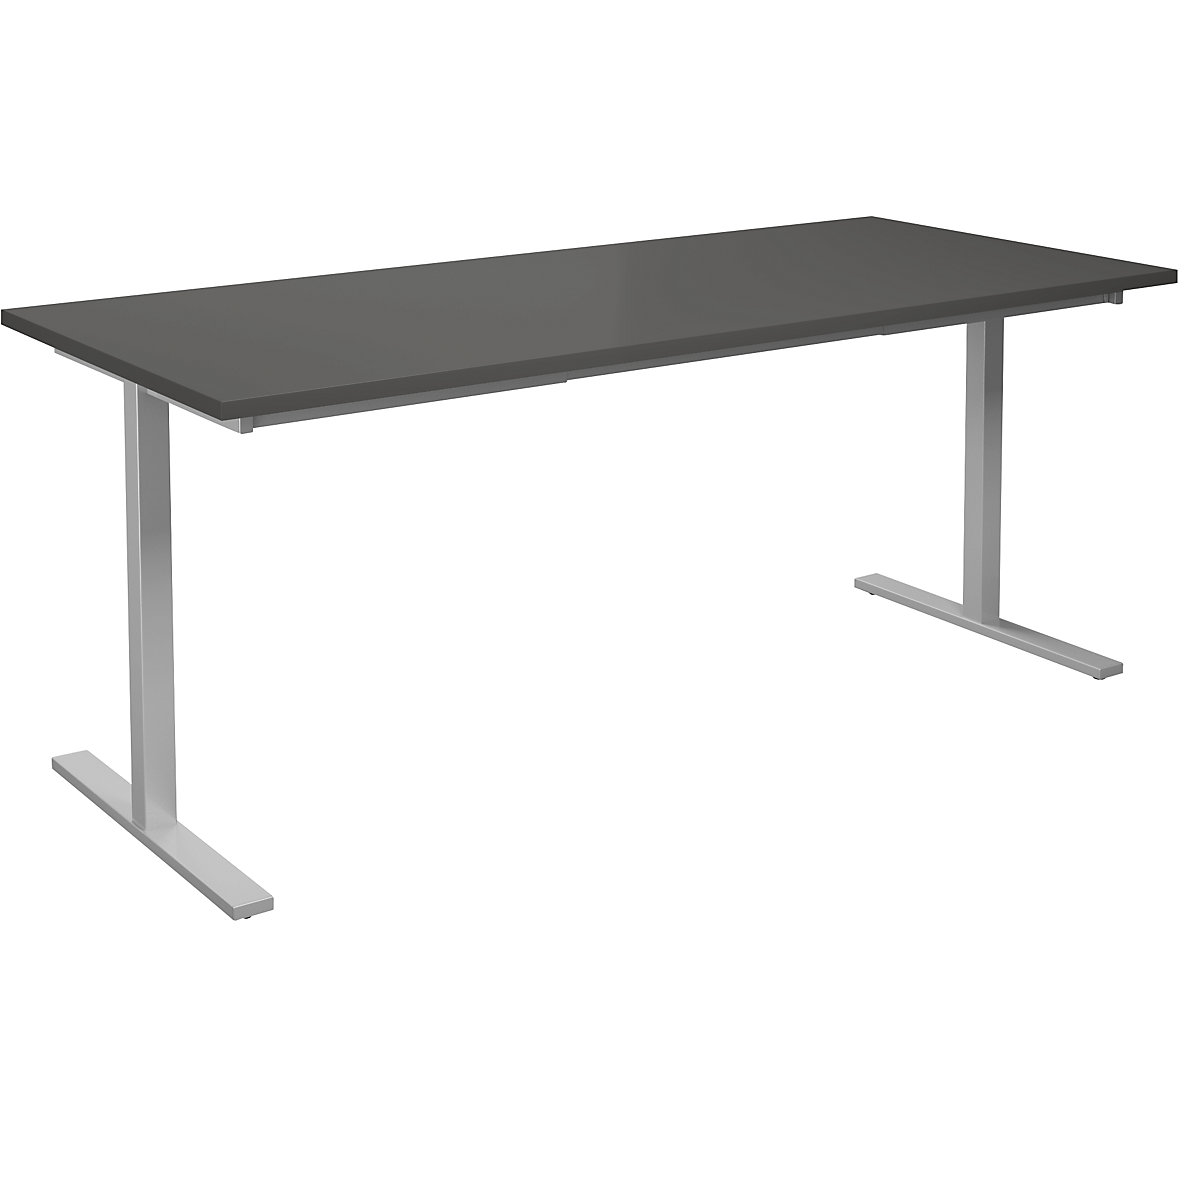 DUO-T multi-purpose desk, straight tabletop, WxD 1800 x 800 mm, dark grey, silver-10